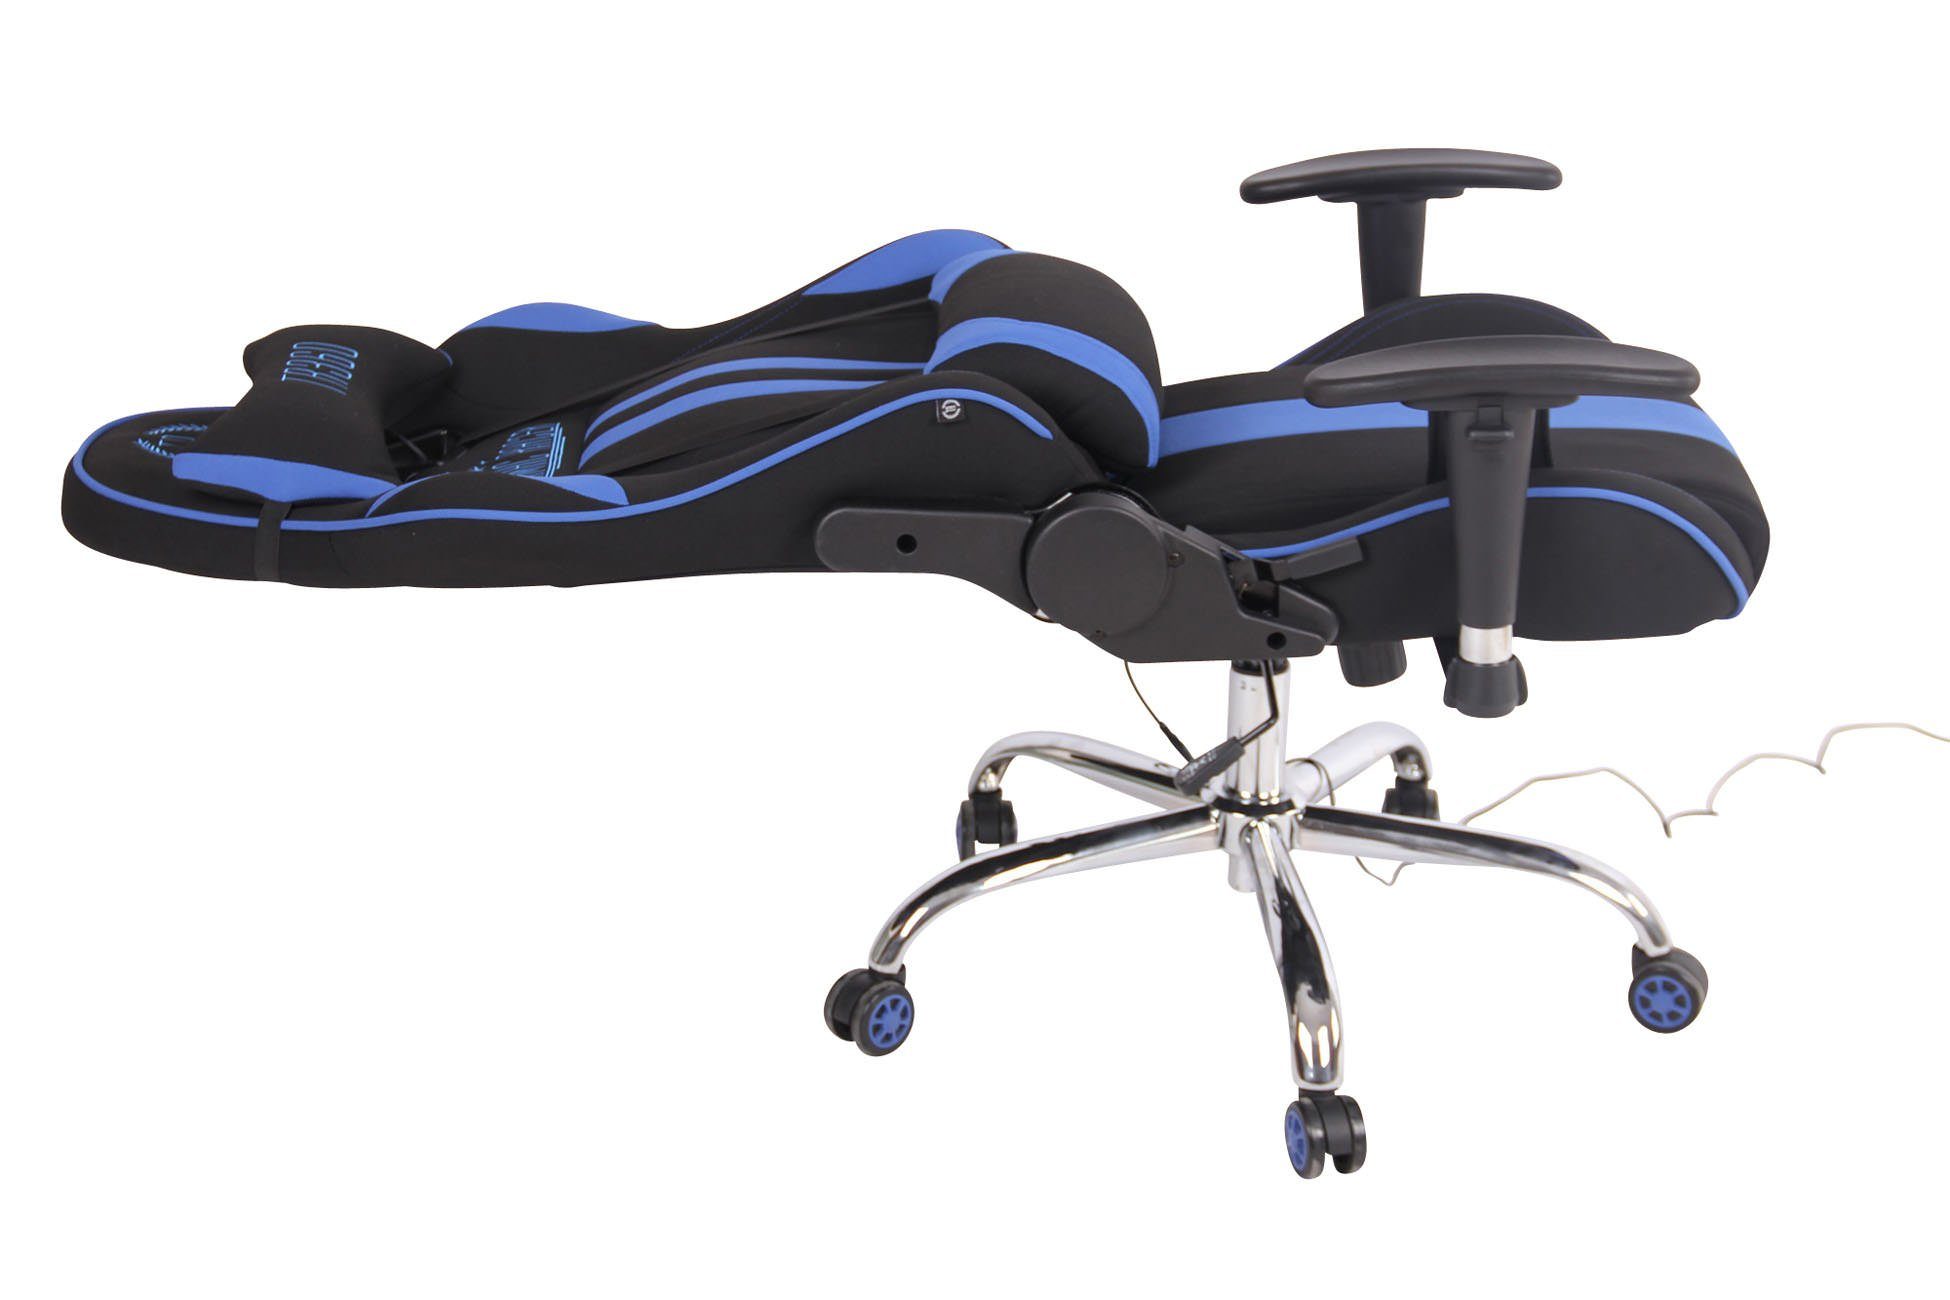 Chair Limit mit XM schwarz/blau Massagefunktion Stoff, Gaming CLP